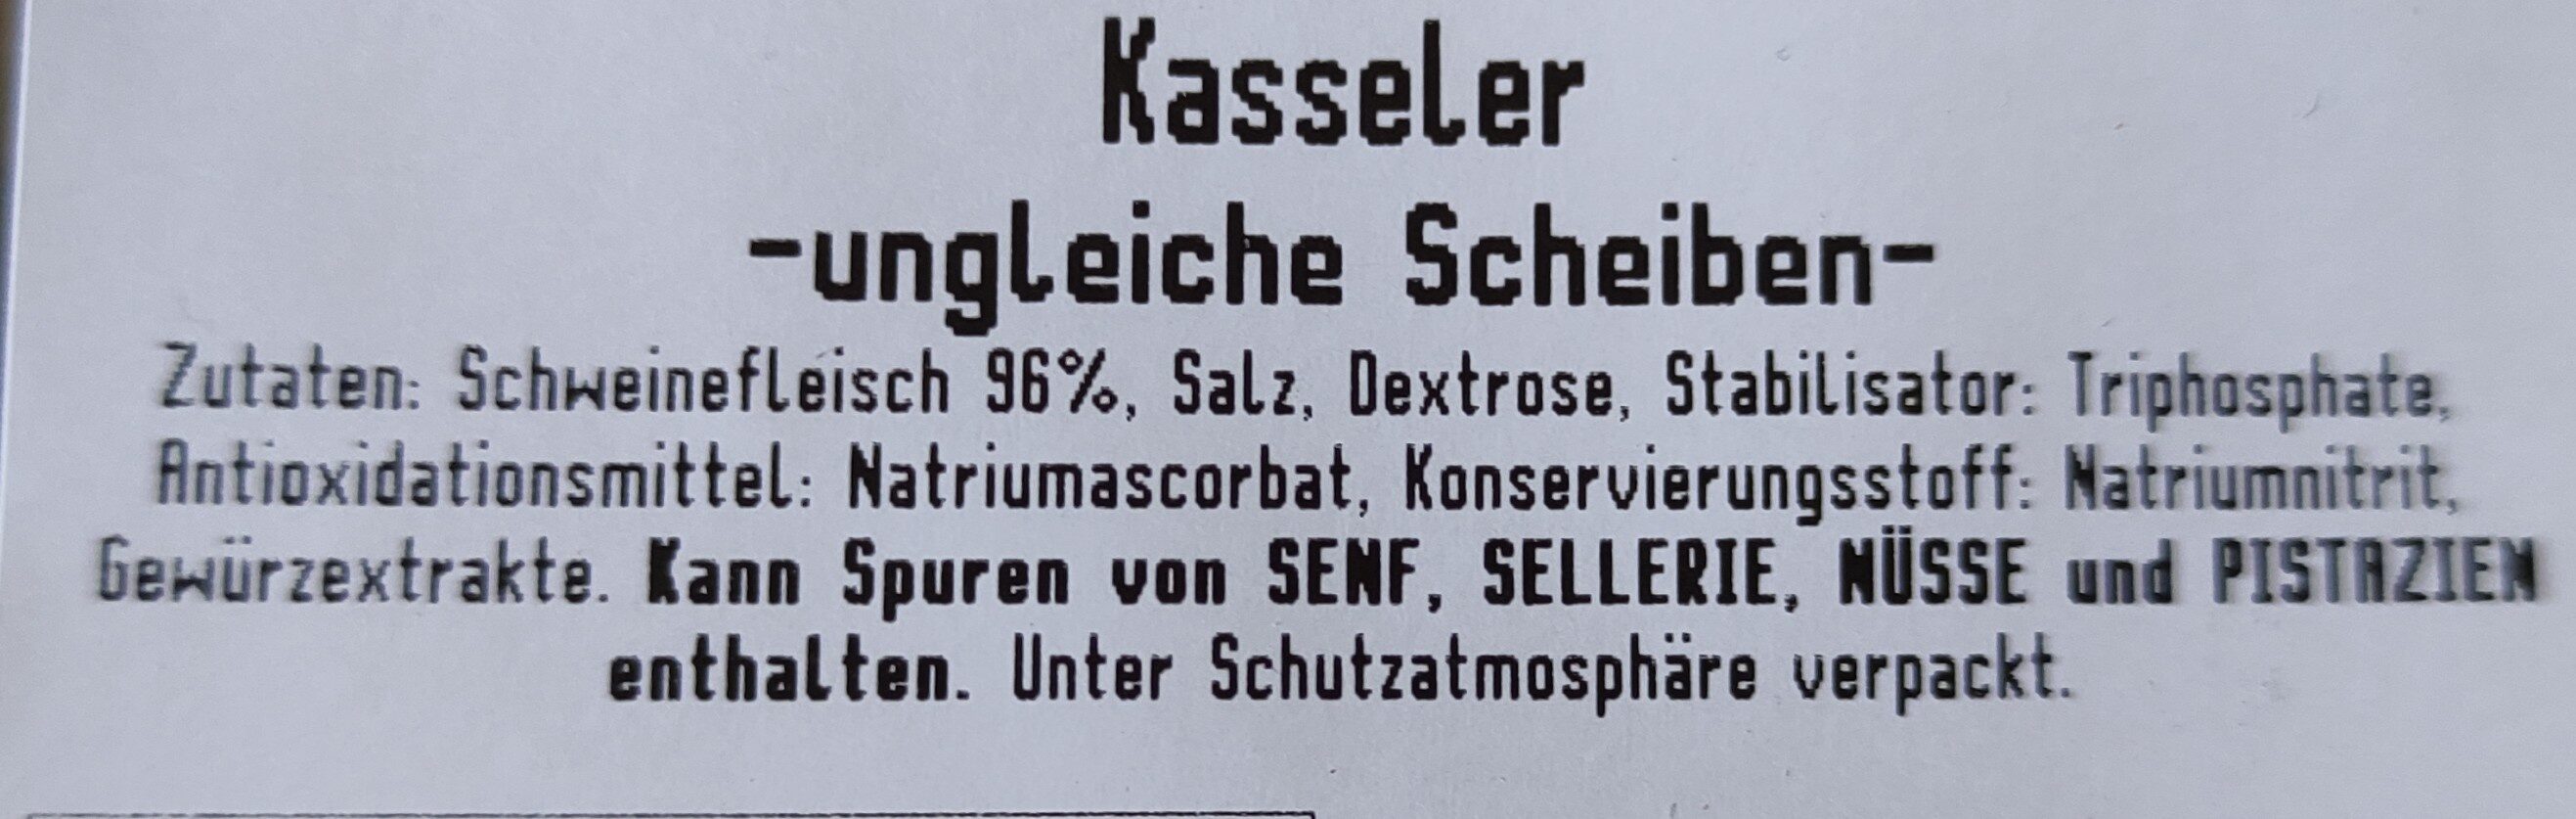 Kasseler (ungleiche Scheiben) - Ingredients